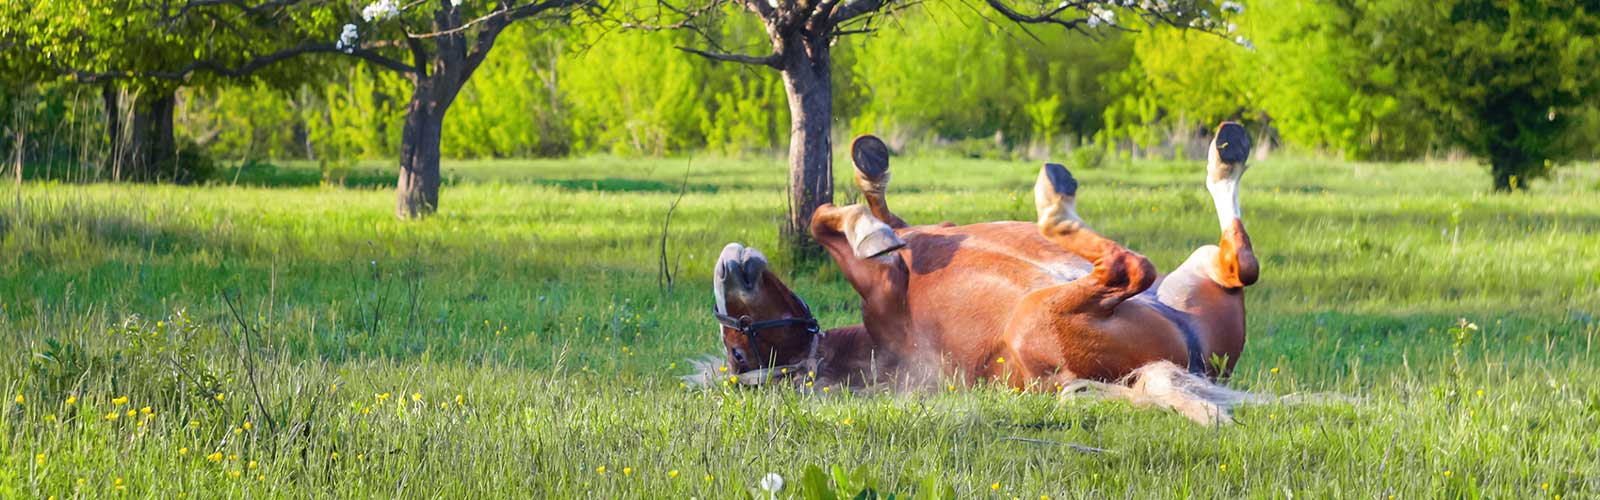 Grasmilben beim Pferd kommen nicht selten vor - Symbolbild: Pferd tobt auf Wiese